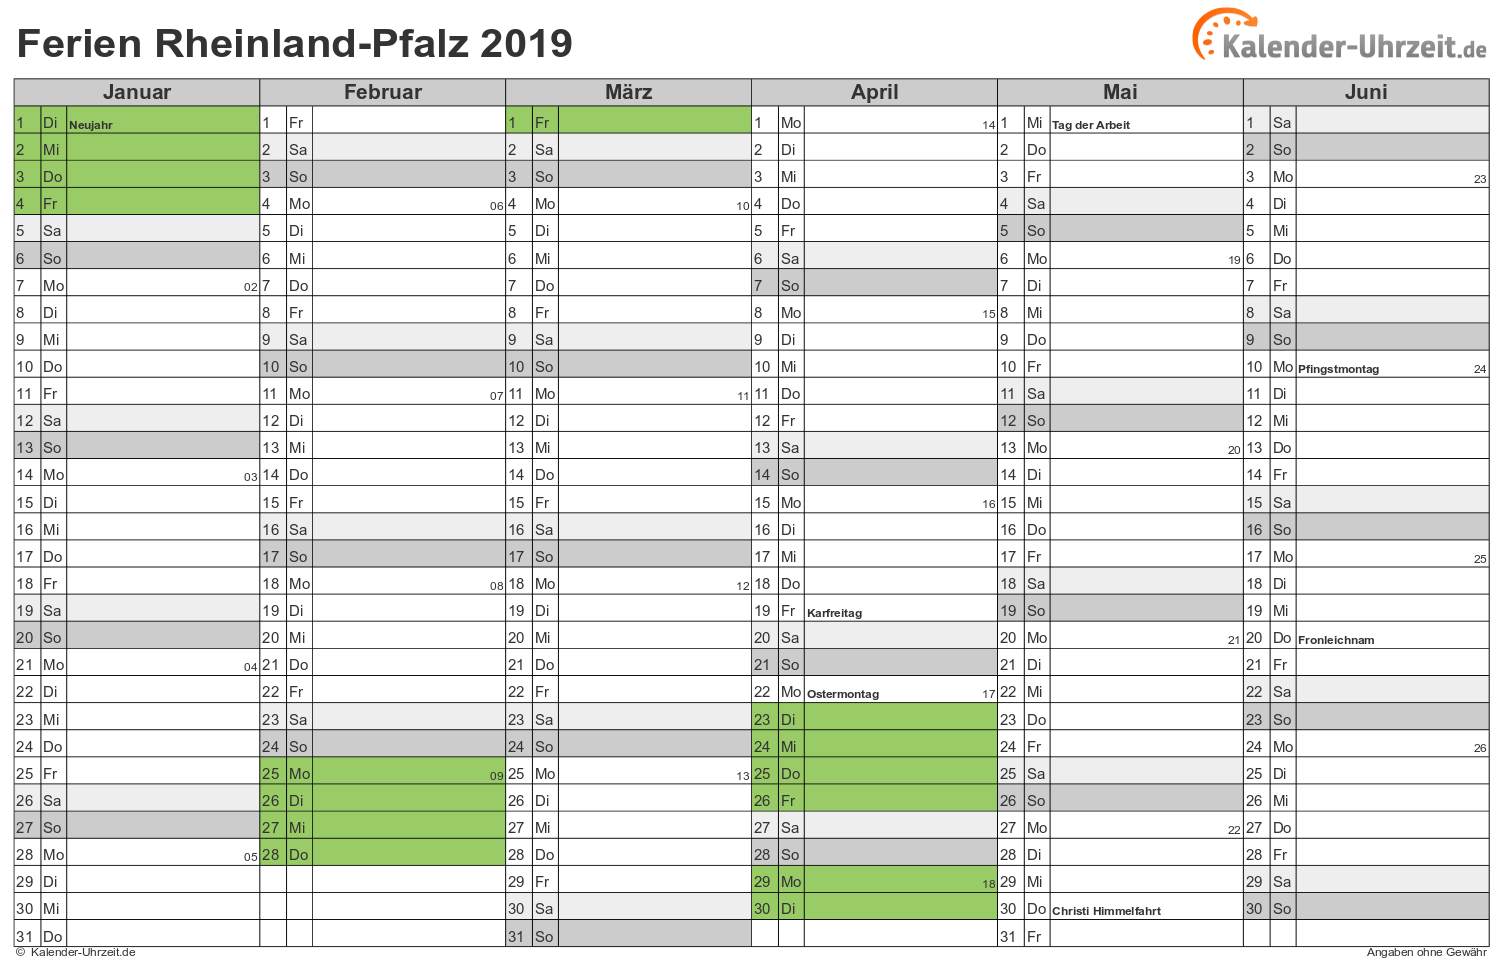 Ferien Rheinland-Pfalz 2019 - Ferienkalender zum Ausdrucken